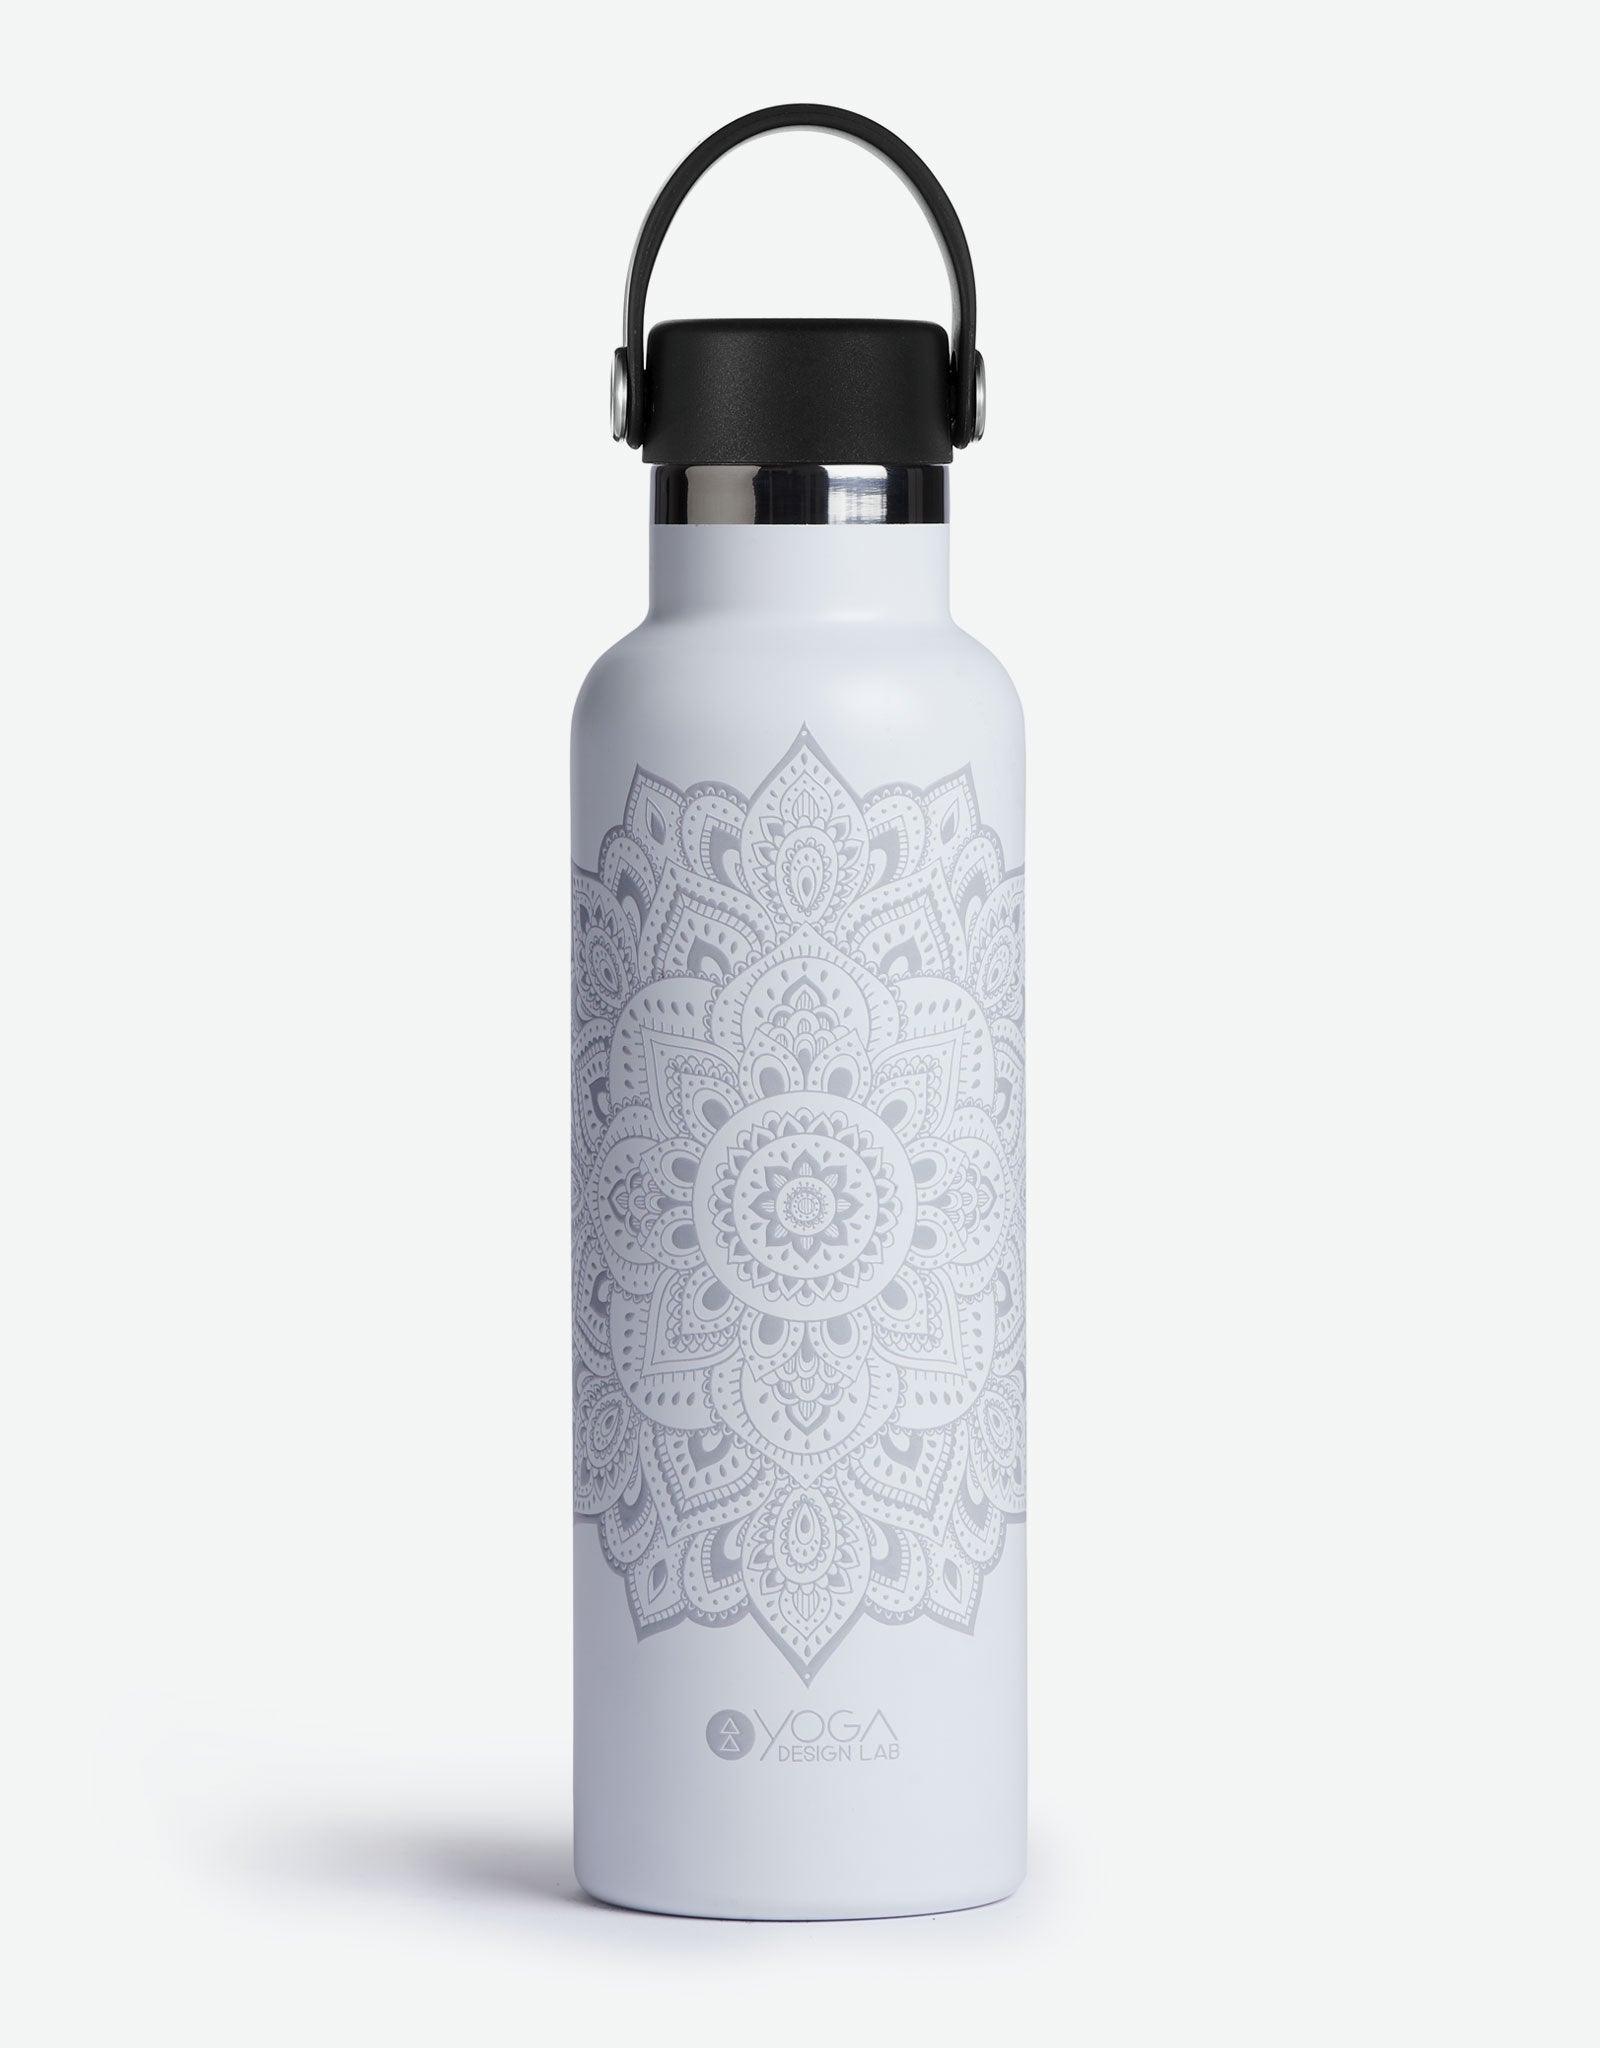 https://www.yogadesignlab.com/cdn/shop/files/yoga-water-bottle-mandala-black-insulated-water-bottle-and-stainless-steel-bottles-yoga-design-lab-4.jpg?v=1686372257